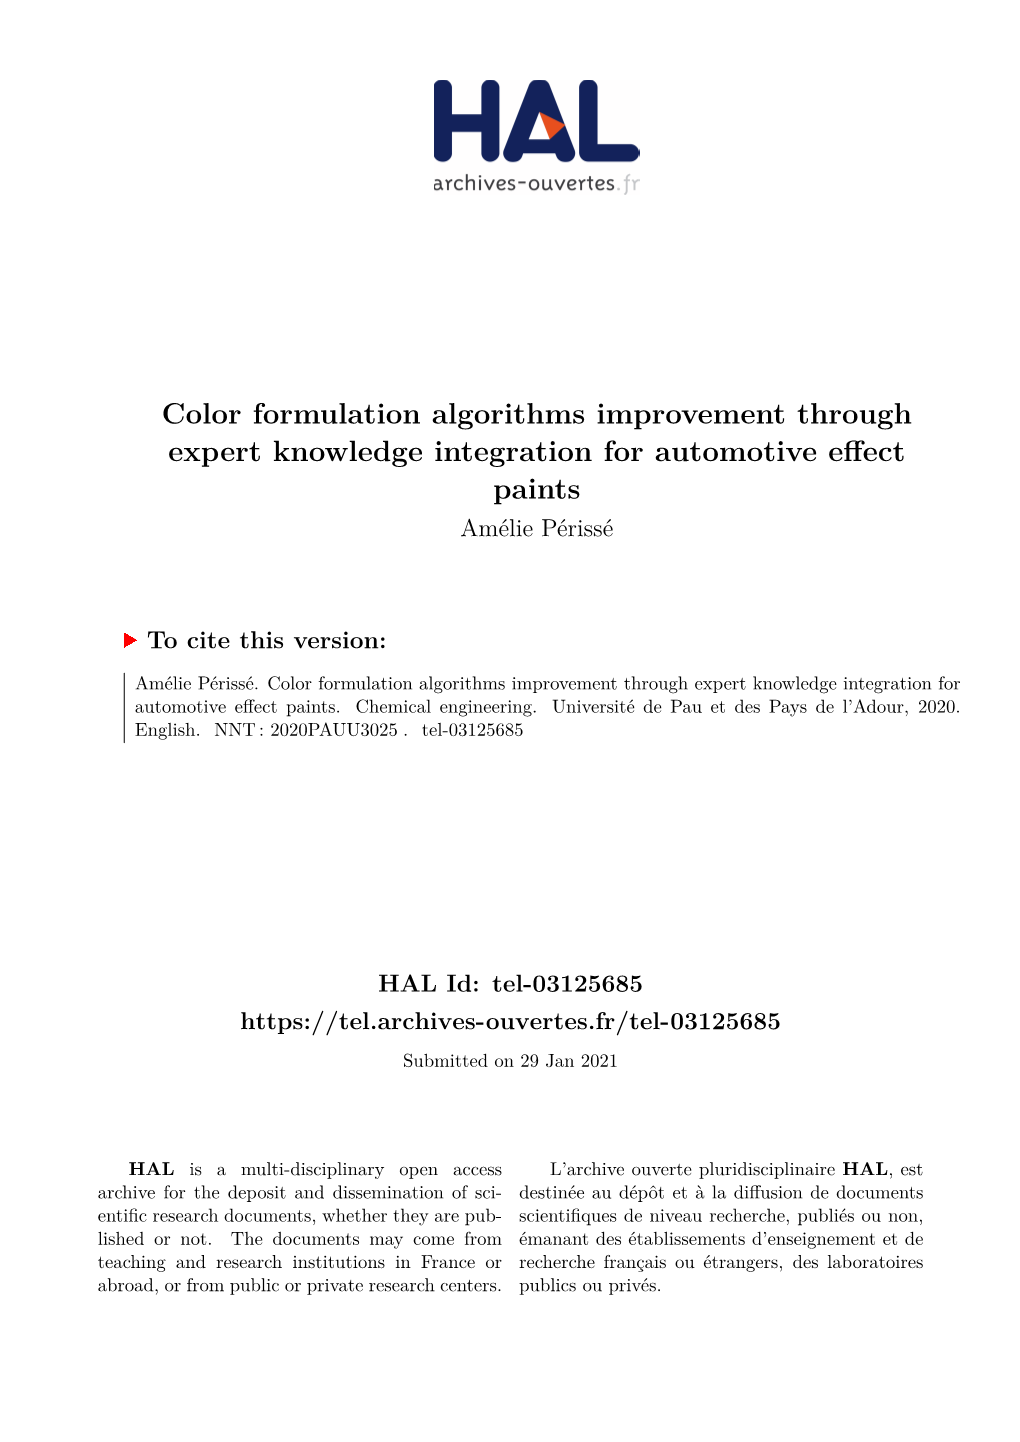 Color Formulation Algorithms Improvement Through Expert Knowledge Integration for Automotive Effect Paints Amélie Périssé